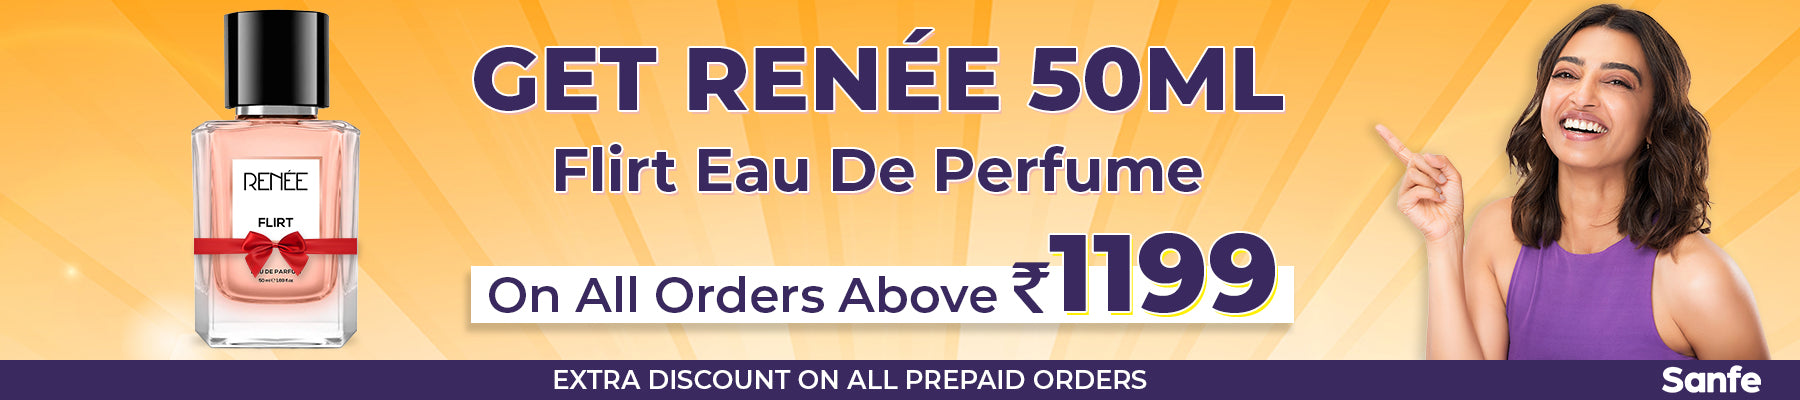 GET Renee 50ML Perfume on all orders above 1199